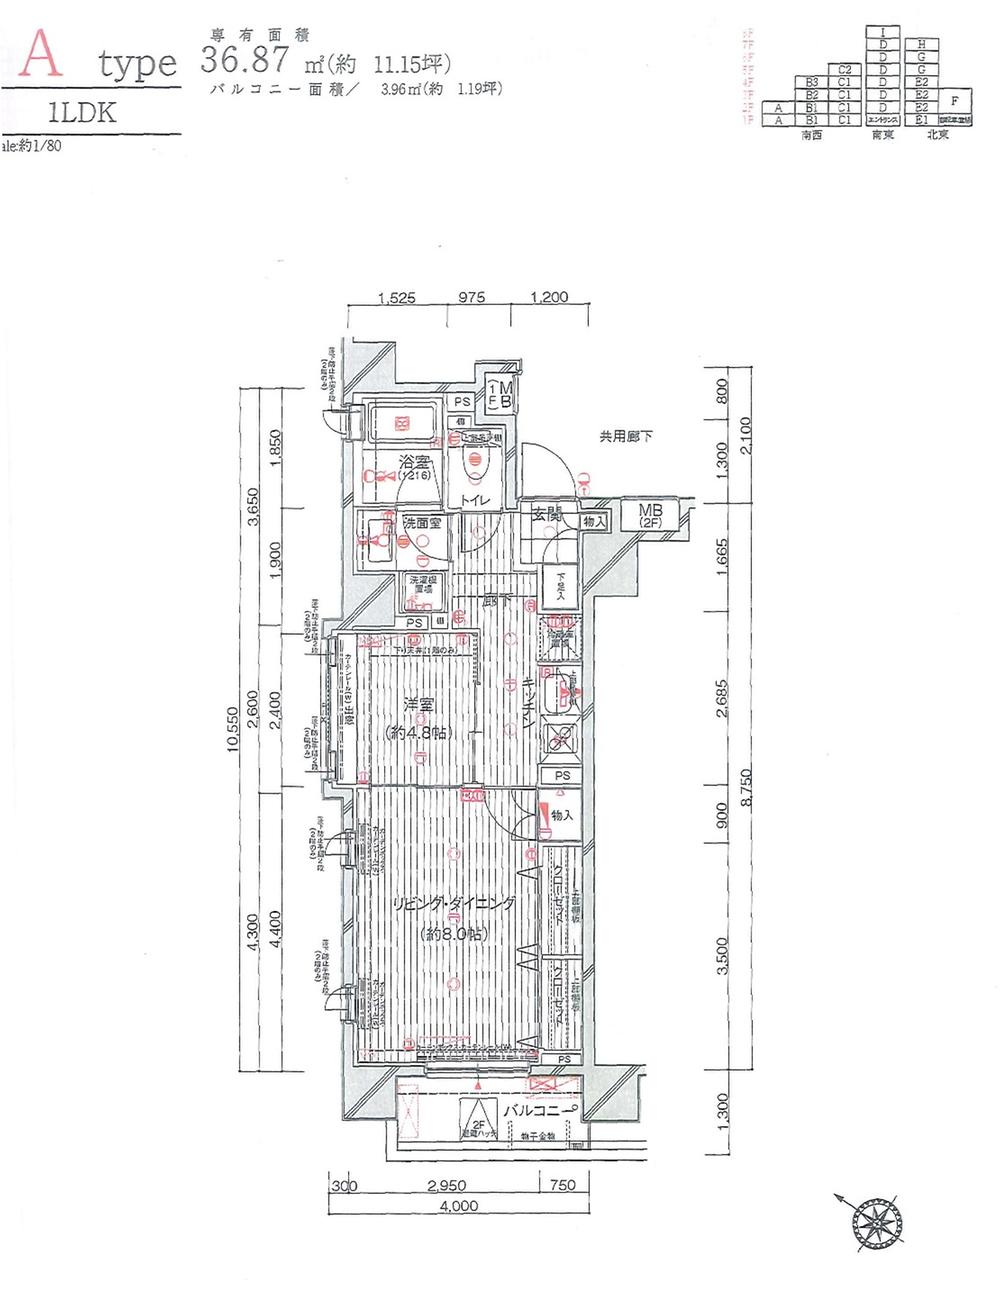 Floor plan. 1LDK, Price 26,900,000 yen, Occupied area 36.87 sq m , Balcony area 3.96 sq m A type floor plan